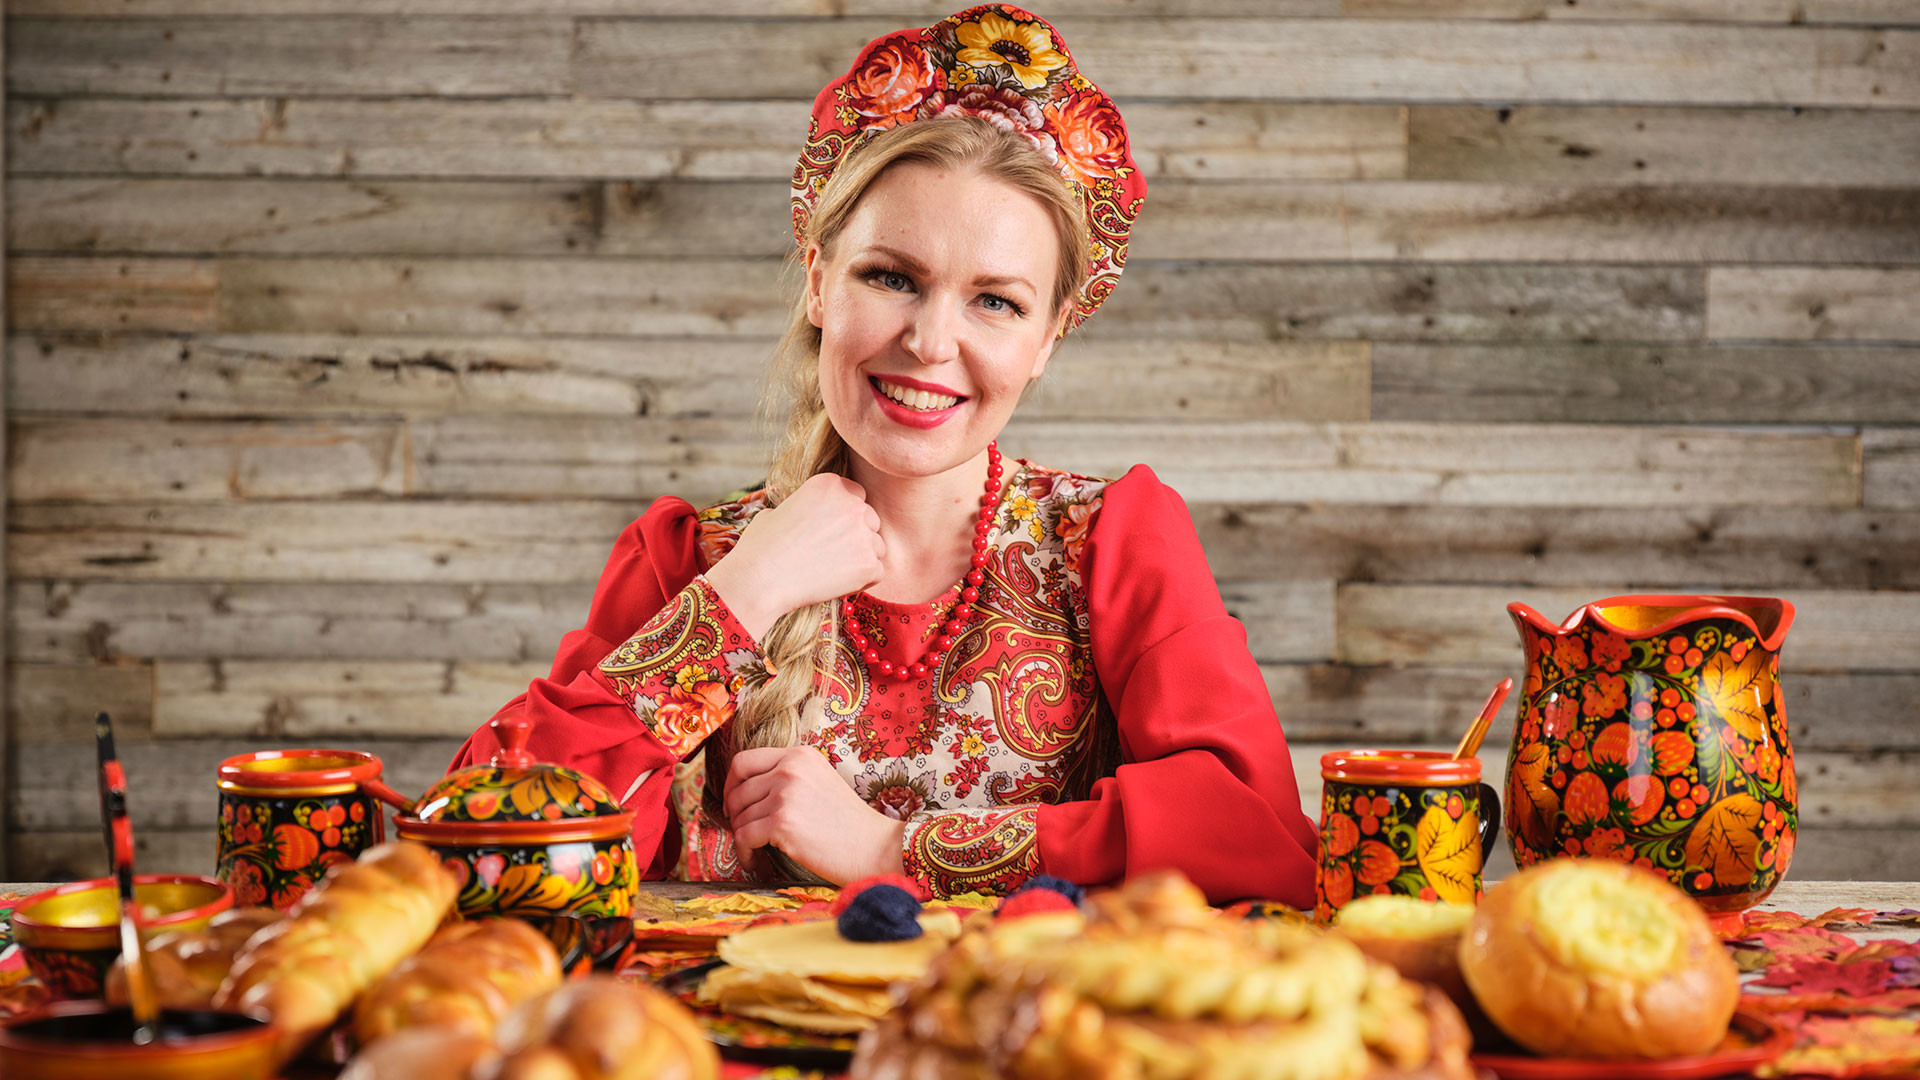 Включи русскую тему. Россия русская душа. Дама в кокошнике хлеб соль. Женщина русском стиле готовит на прозрачном фоне. Русские женщины картинки высокого разрешения.